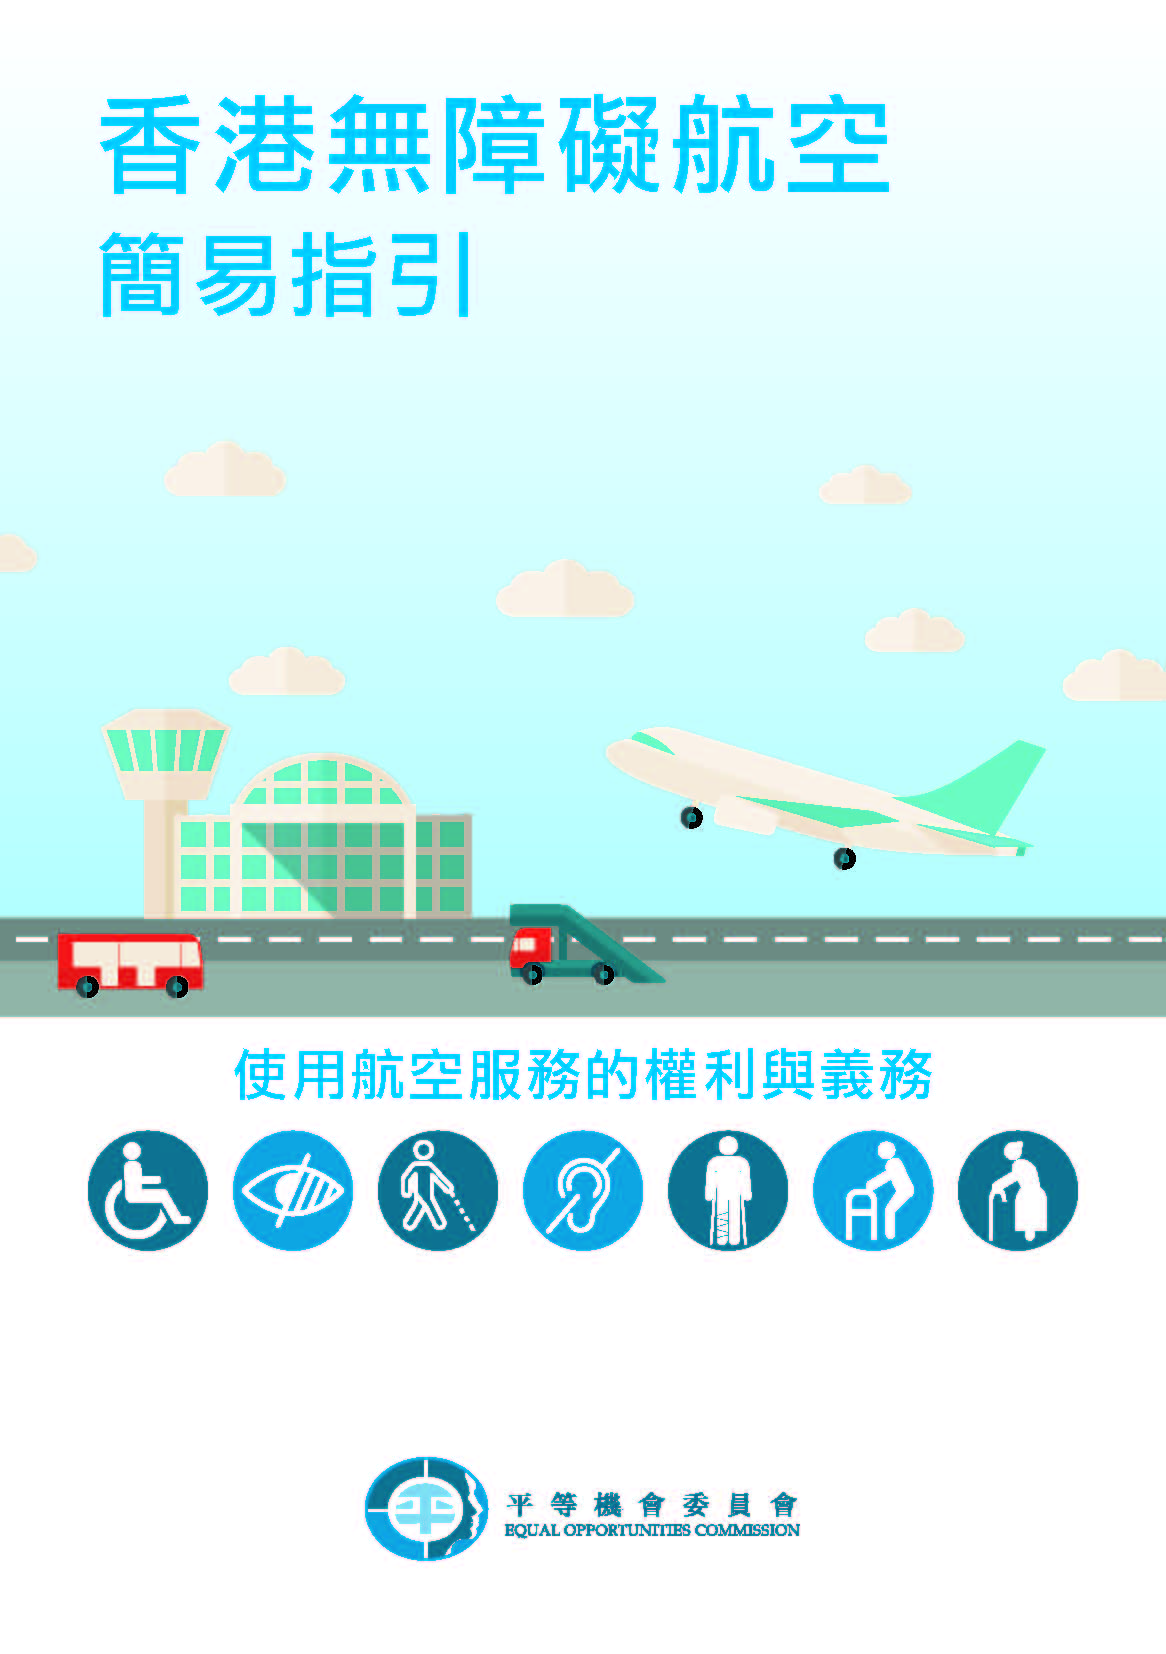 香港無障礙航空簡易指引